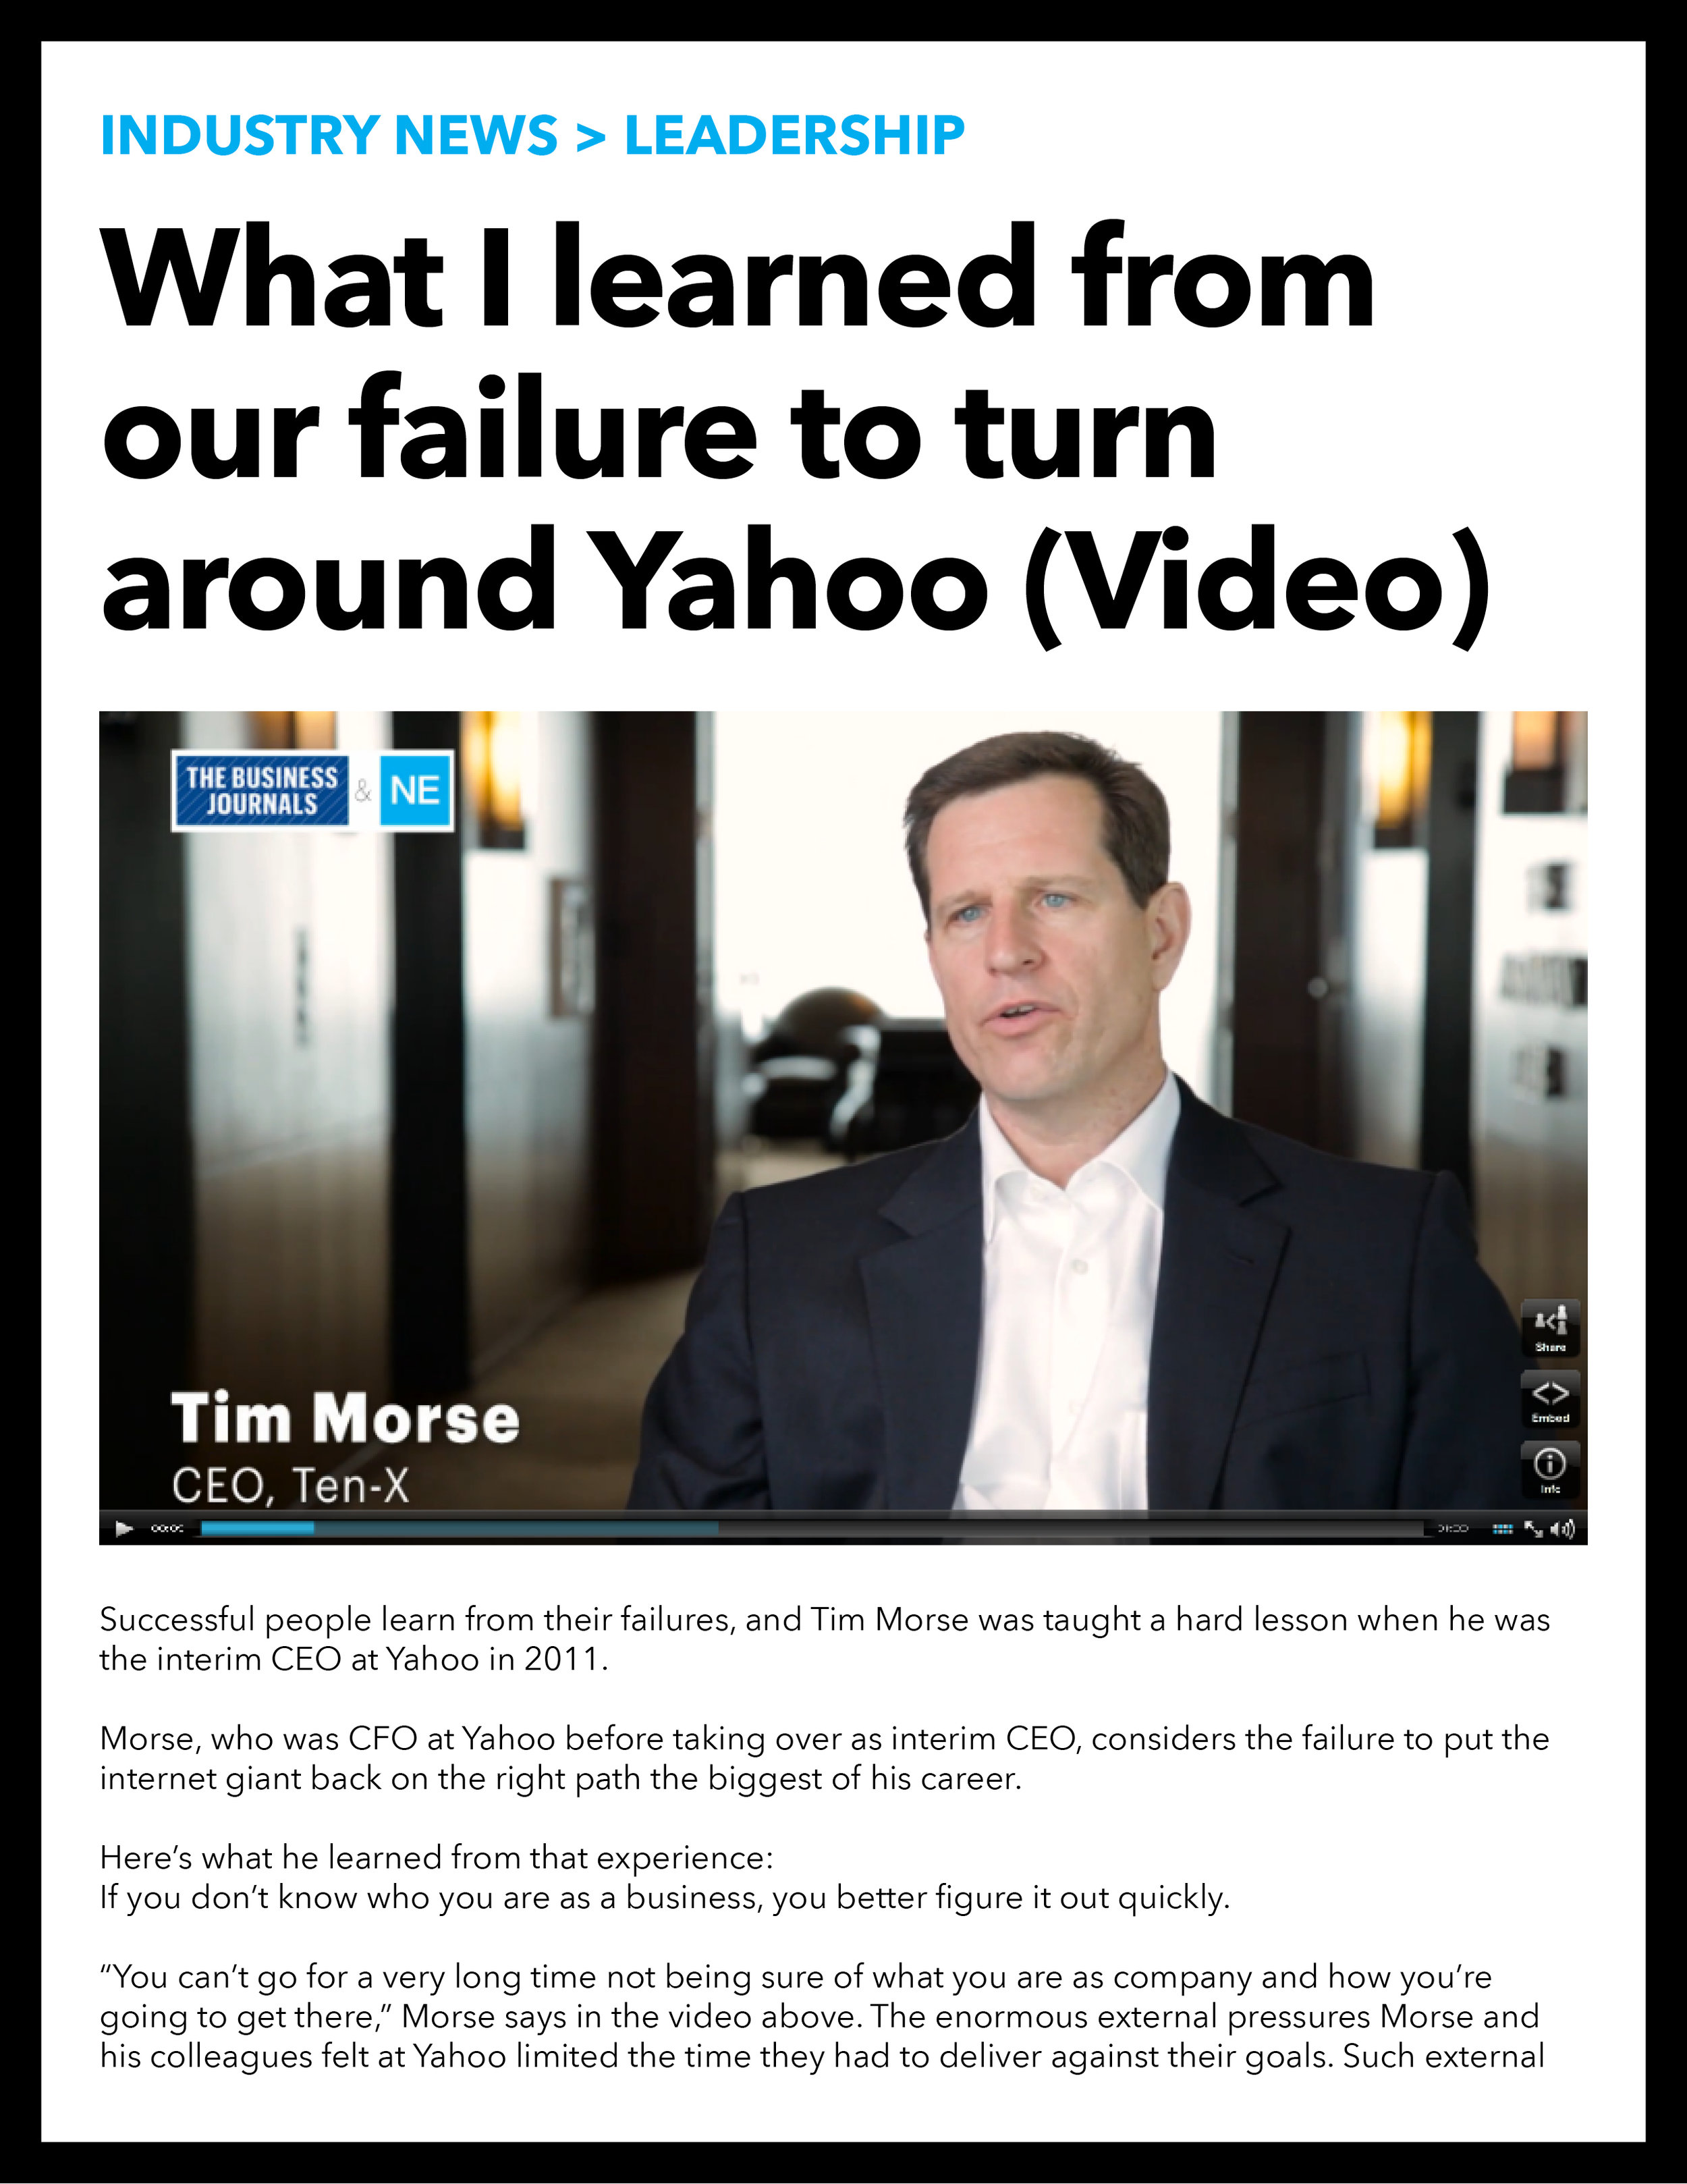 Tim Morse, CEO of Ten-X